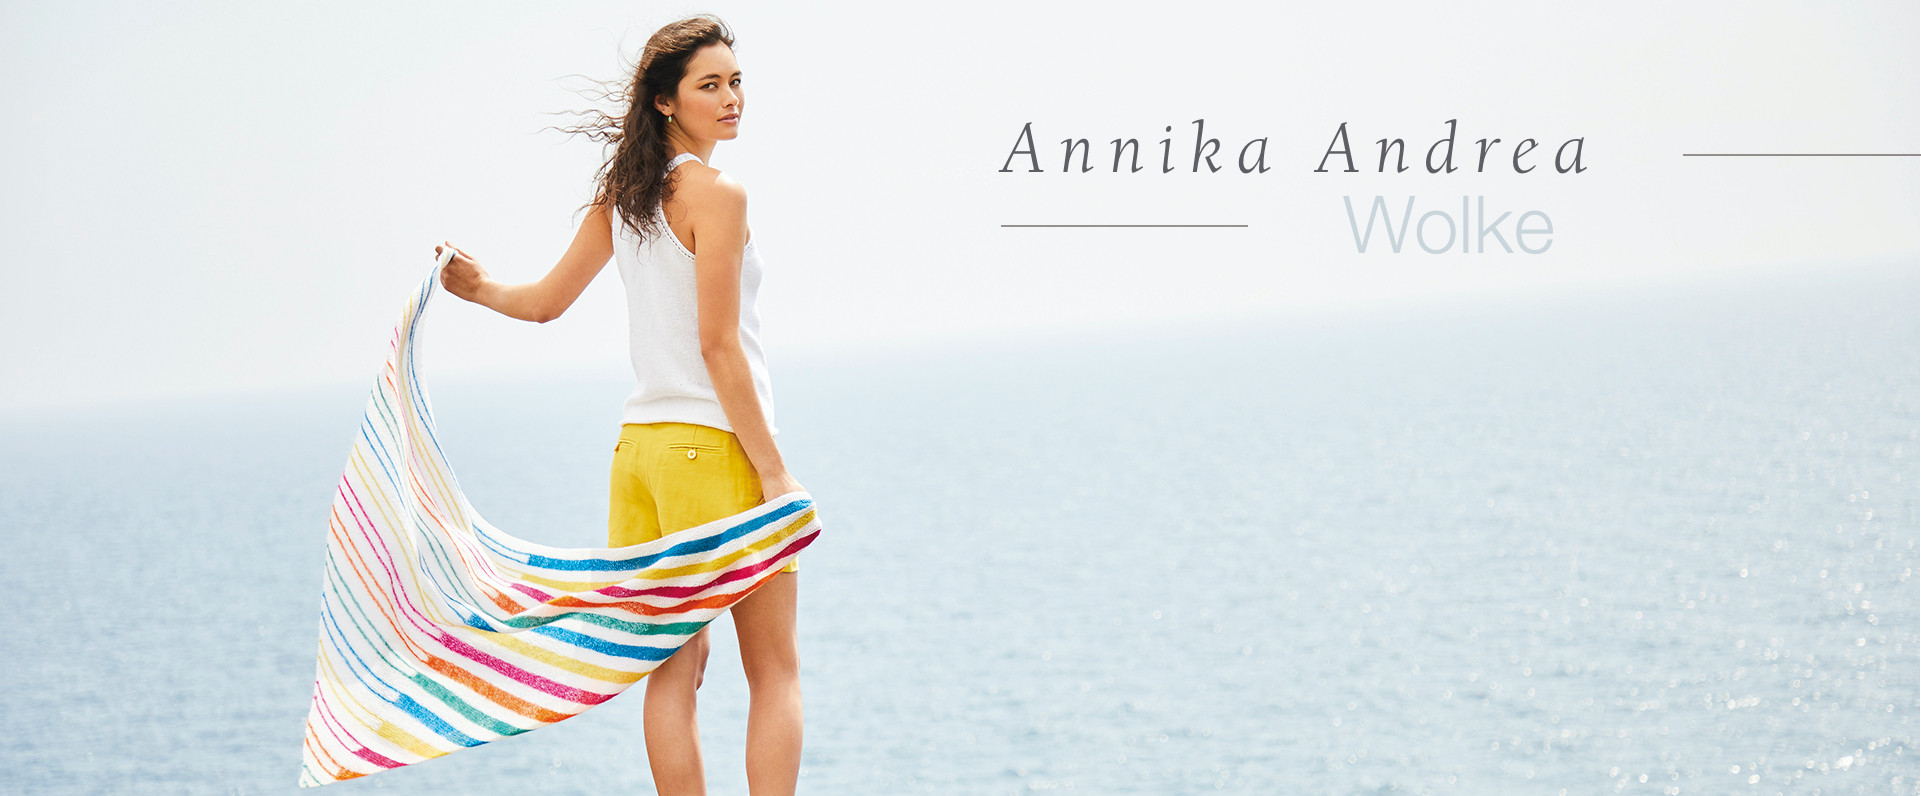 Annika Andrea Wolke Designer Hero Banner